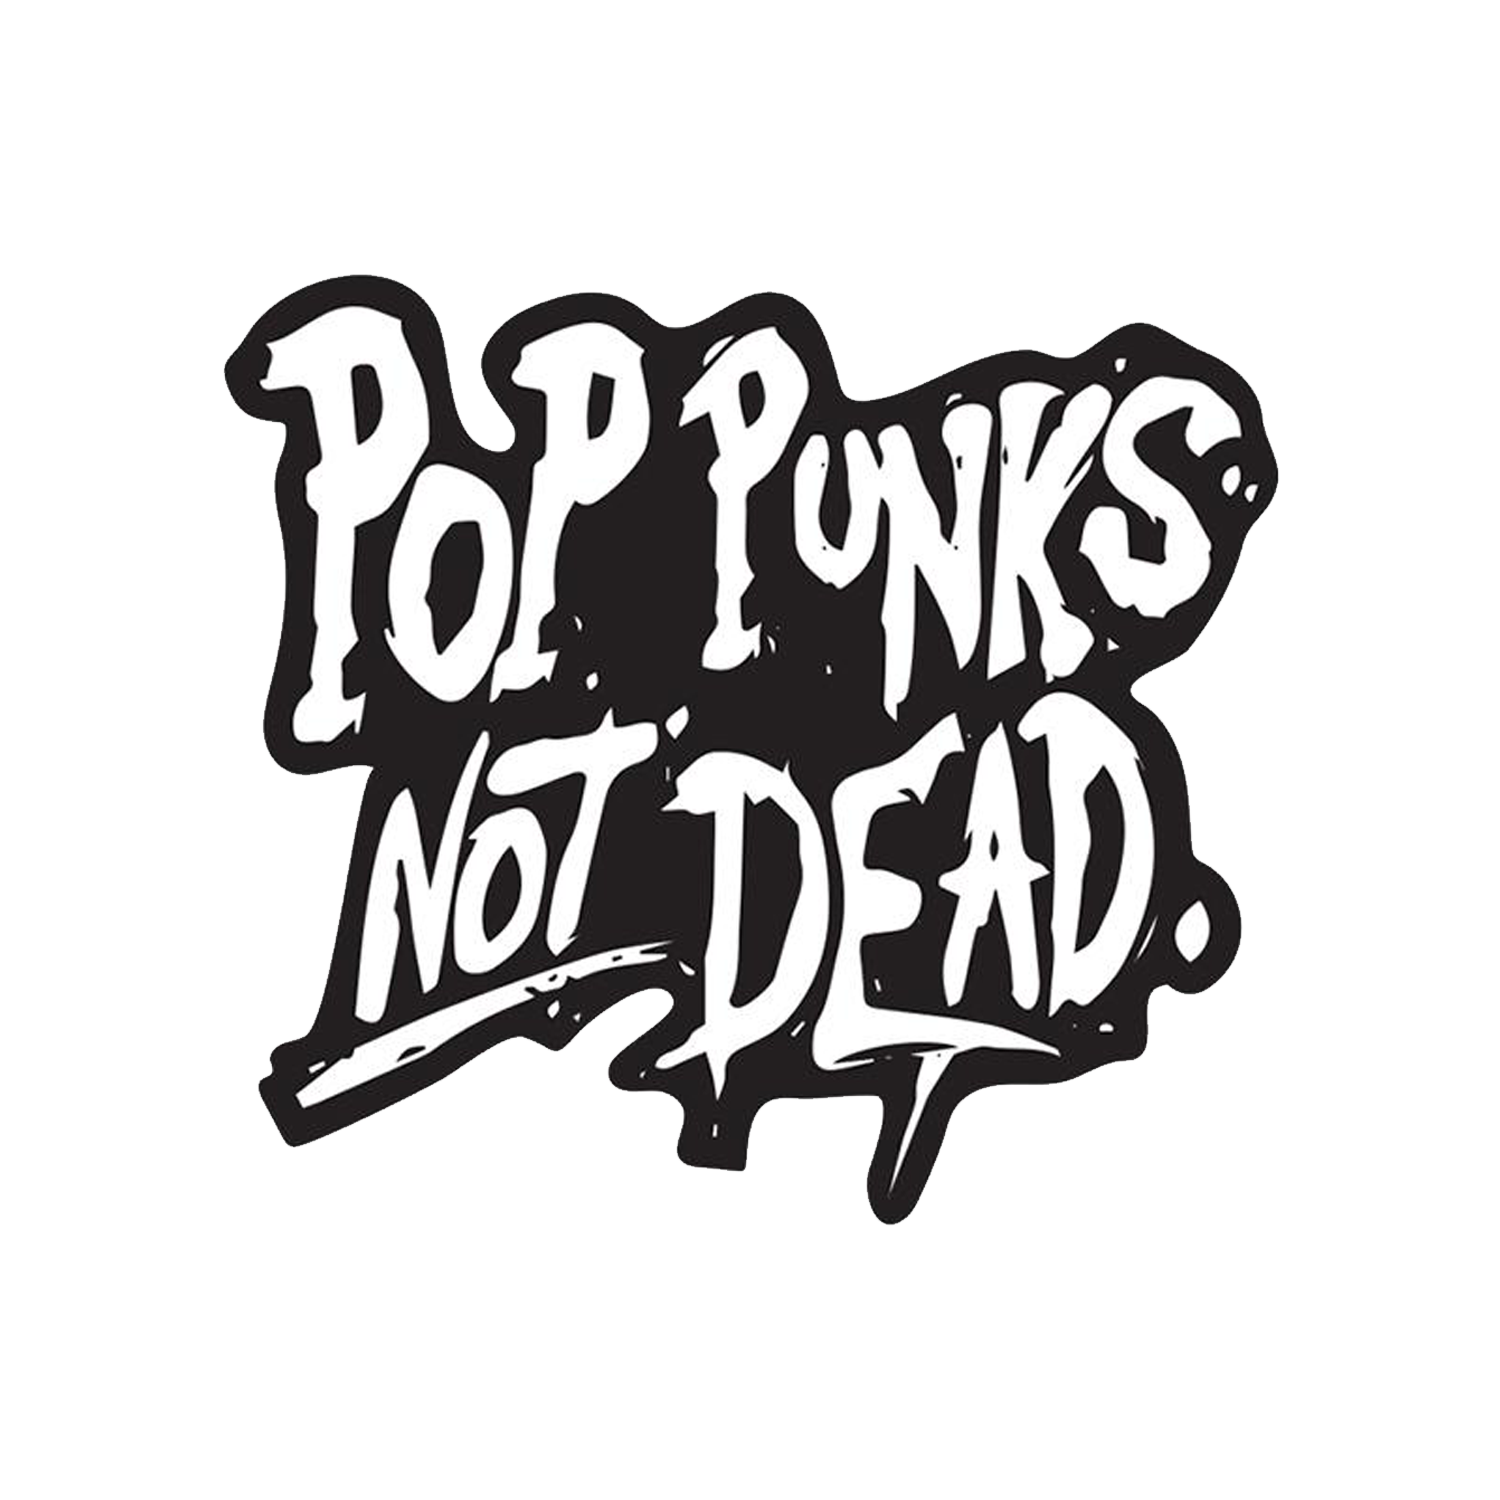 Il punk non è morto